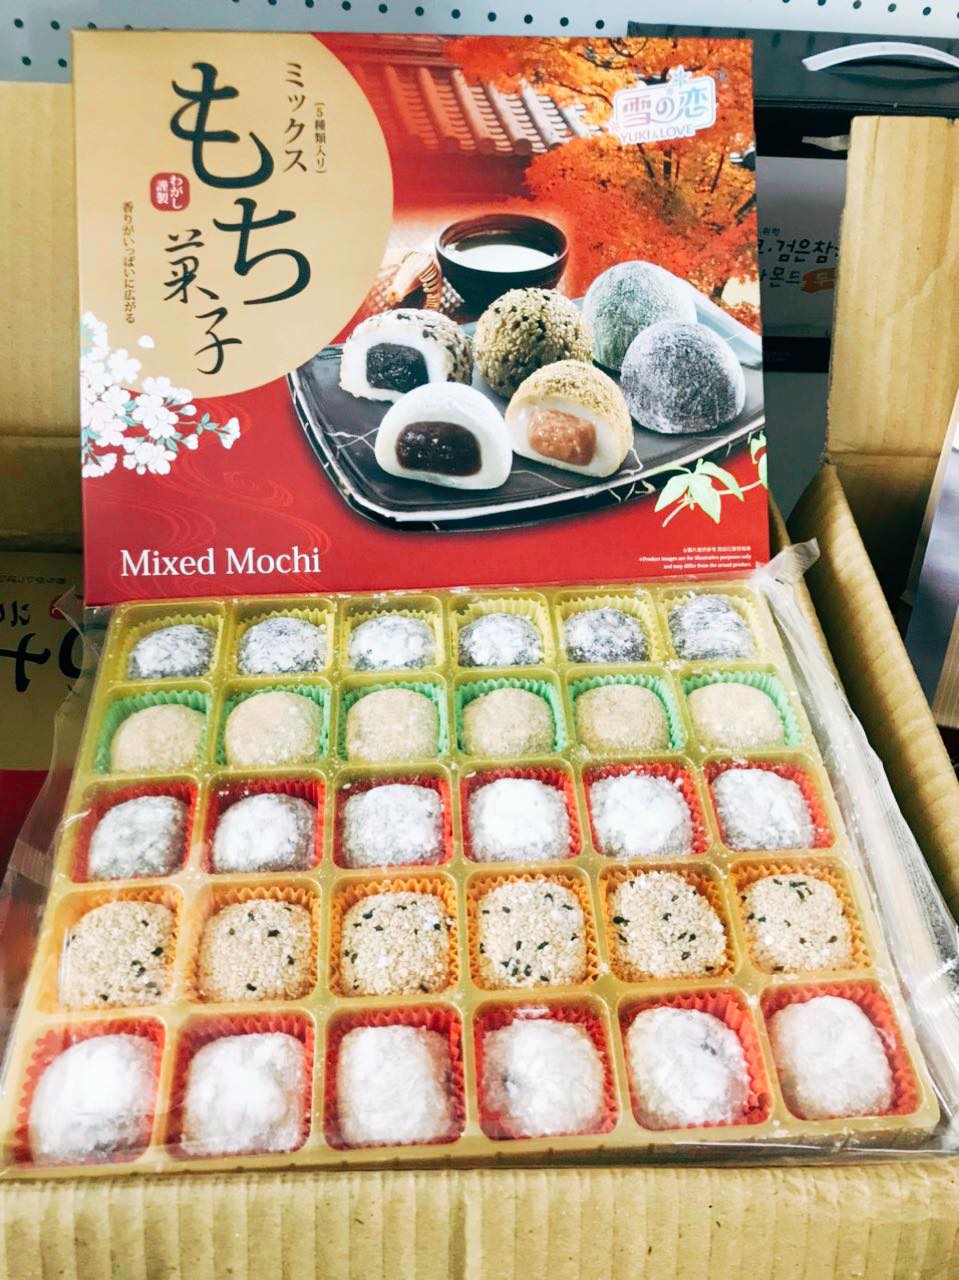 Bánh Mochi tổng hợp Yuki & Love Mixed Mochi 900g (5 hương vị)